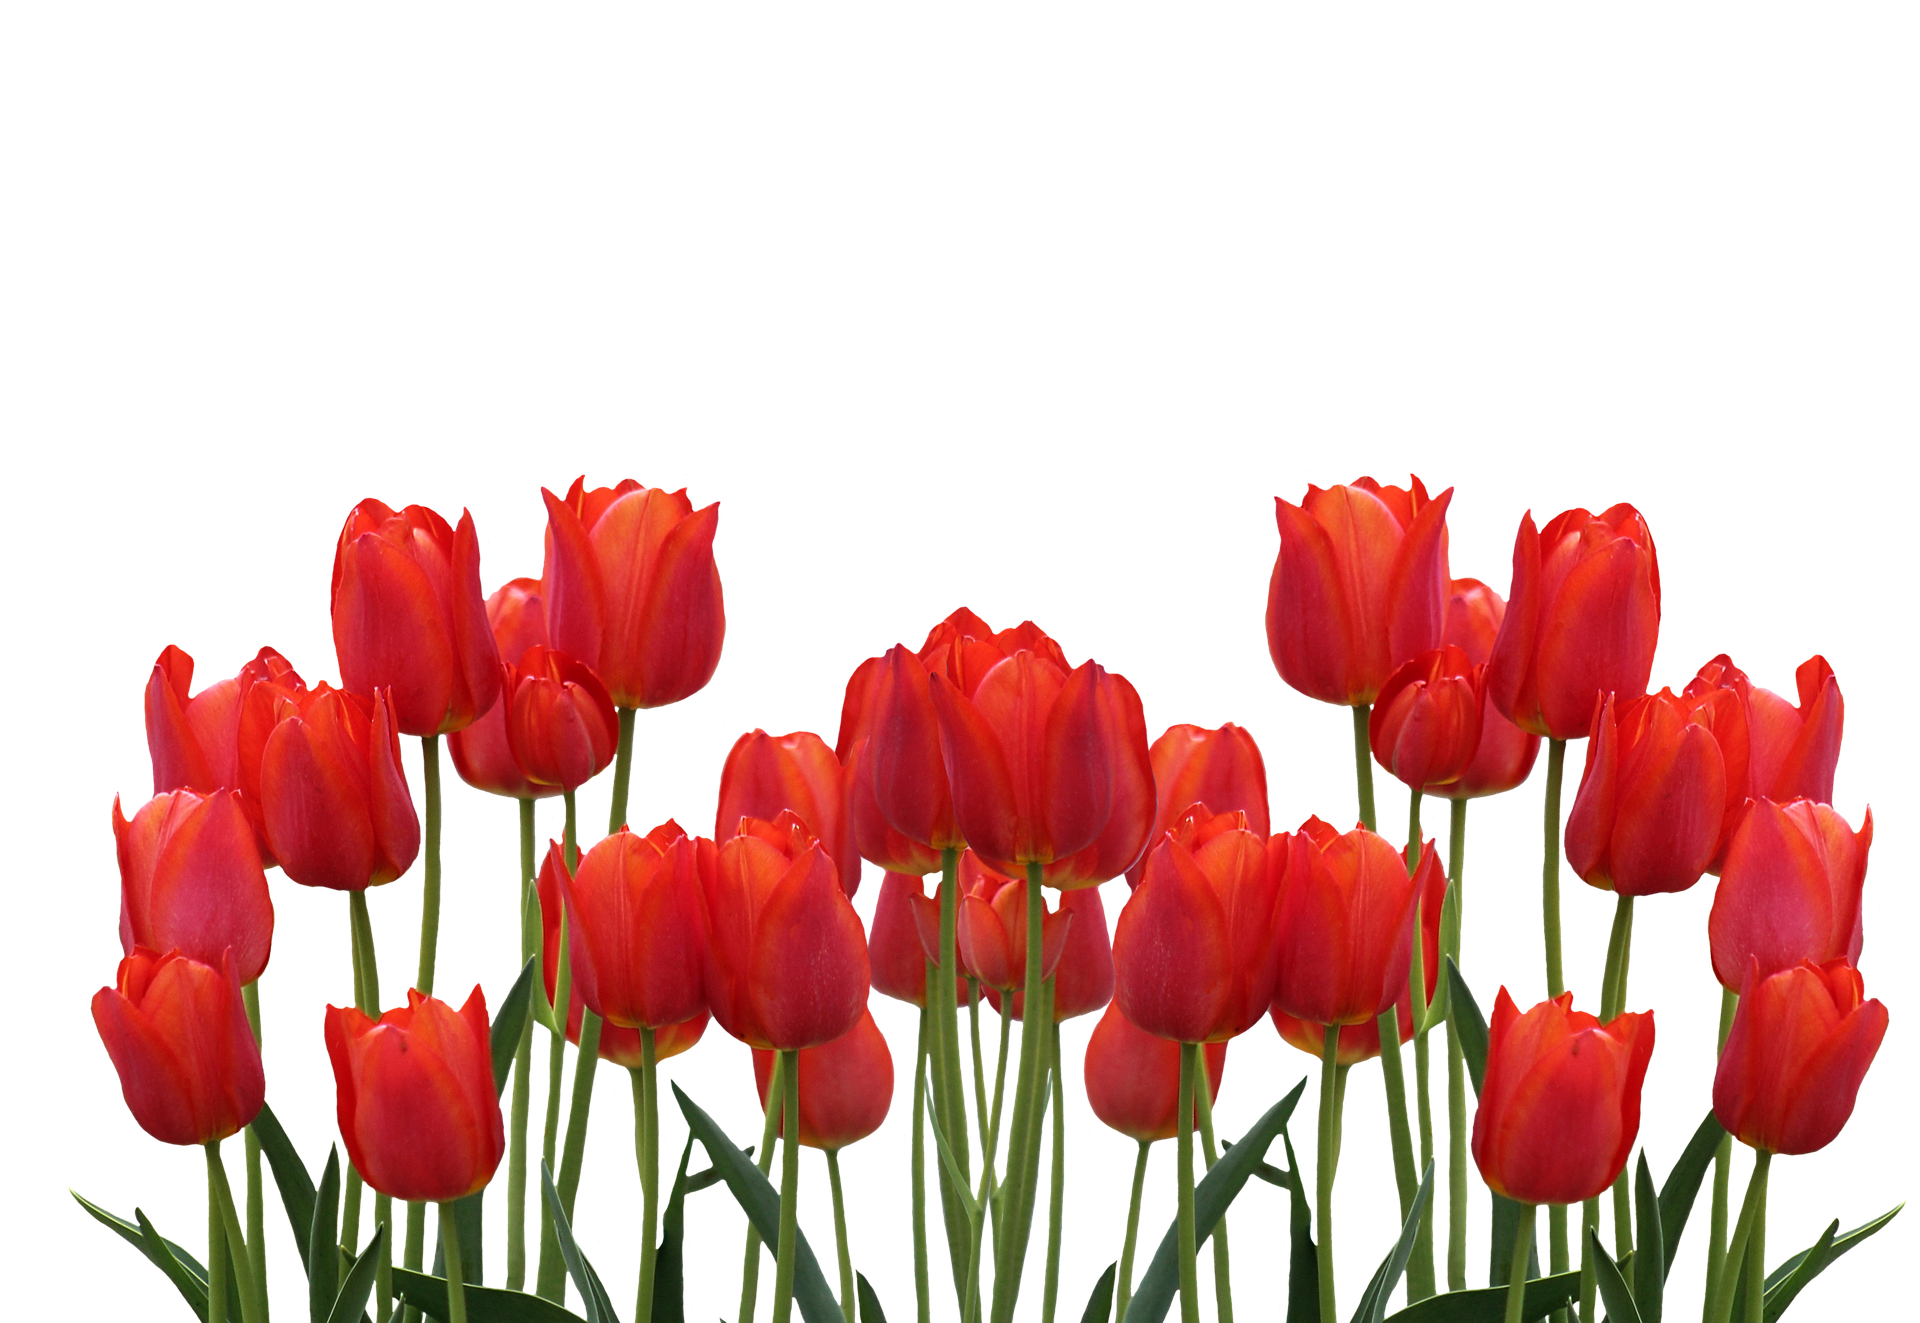 Vibrant_ Red_ Tulips_ Against_ Black_ Background.jpg